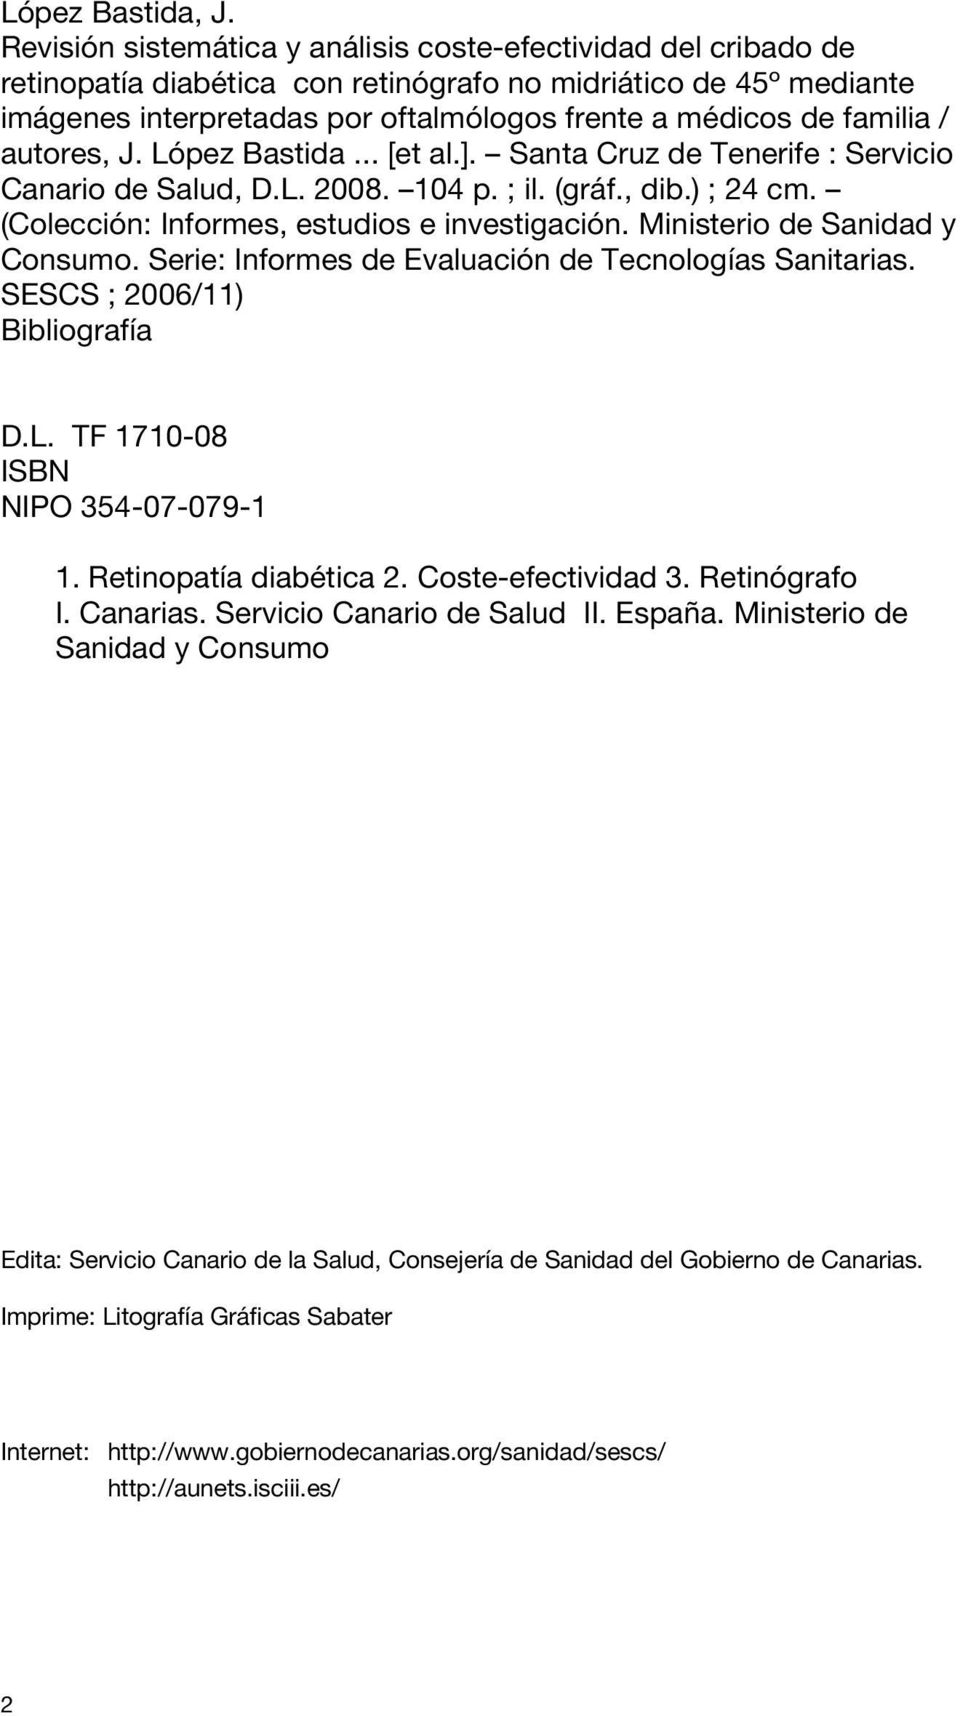 familia / autores, J. López Bastida... [et al.]. Santa Cruz de Tenerife : Servicio Canario de Salud, D.L. 2008. 104 p. ; il. (gráf., dib.) ; 24 cm. (Colección: Informes, estudios e investigación.